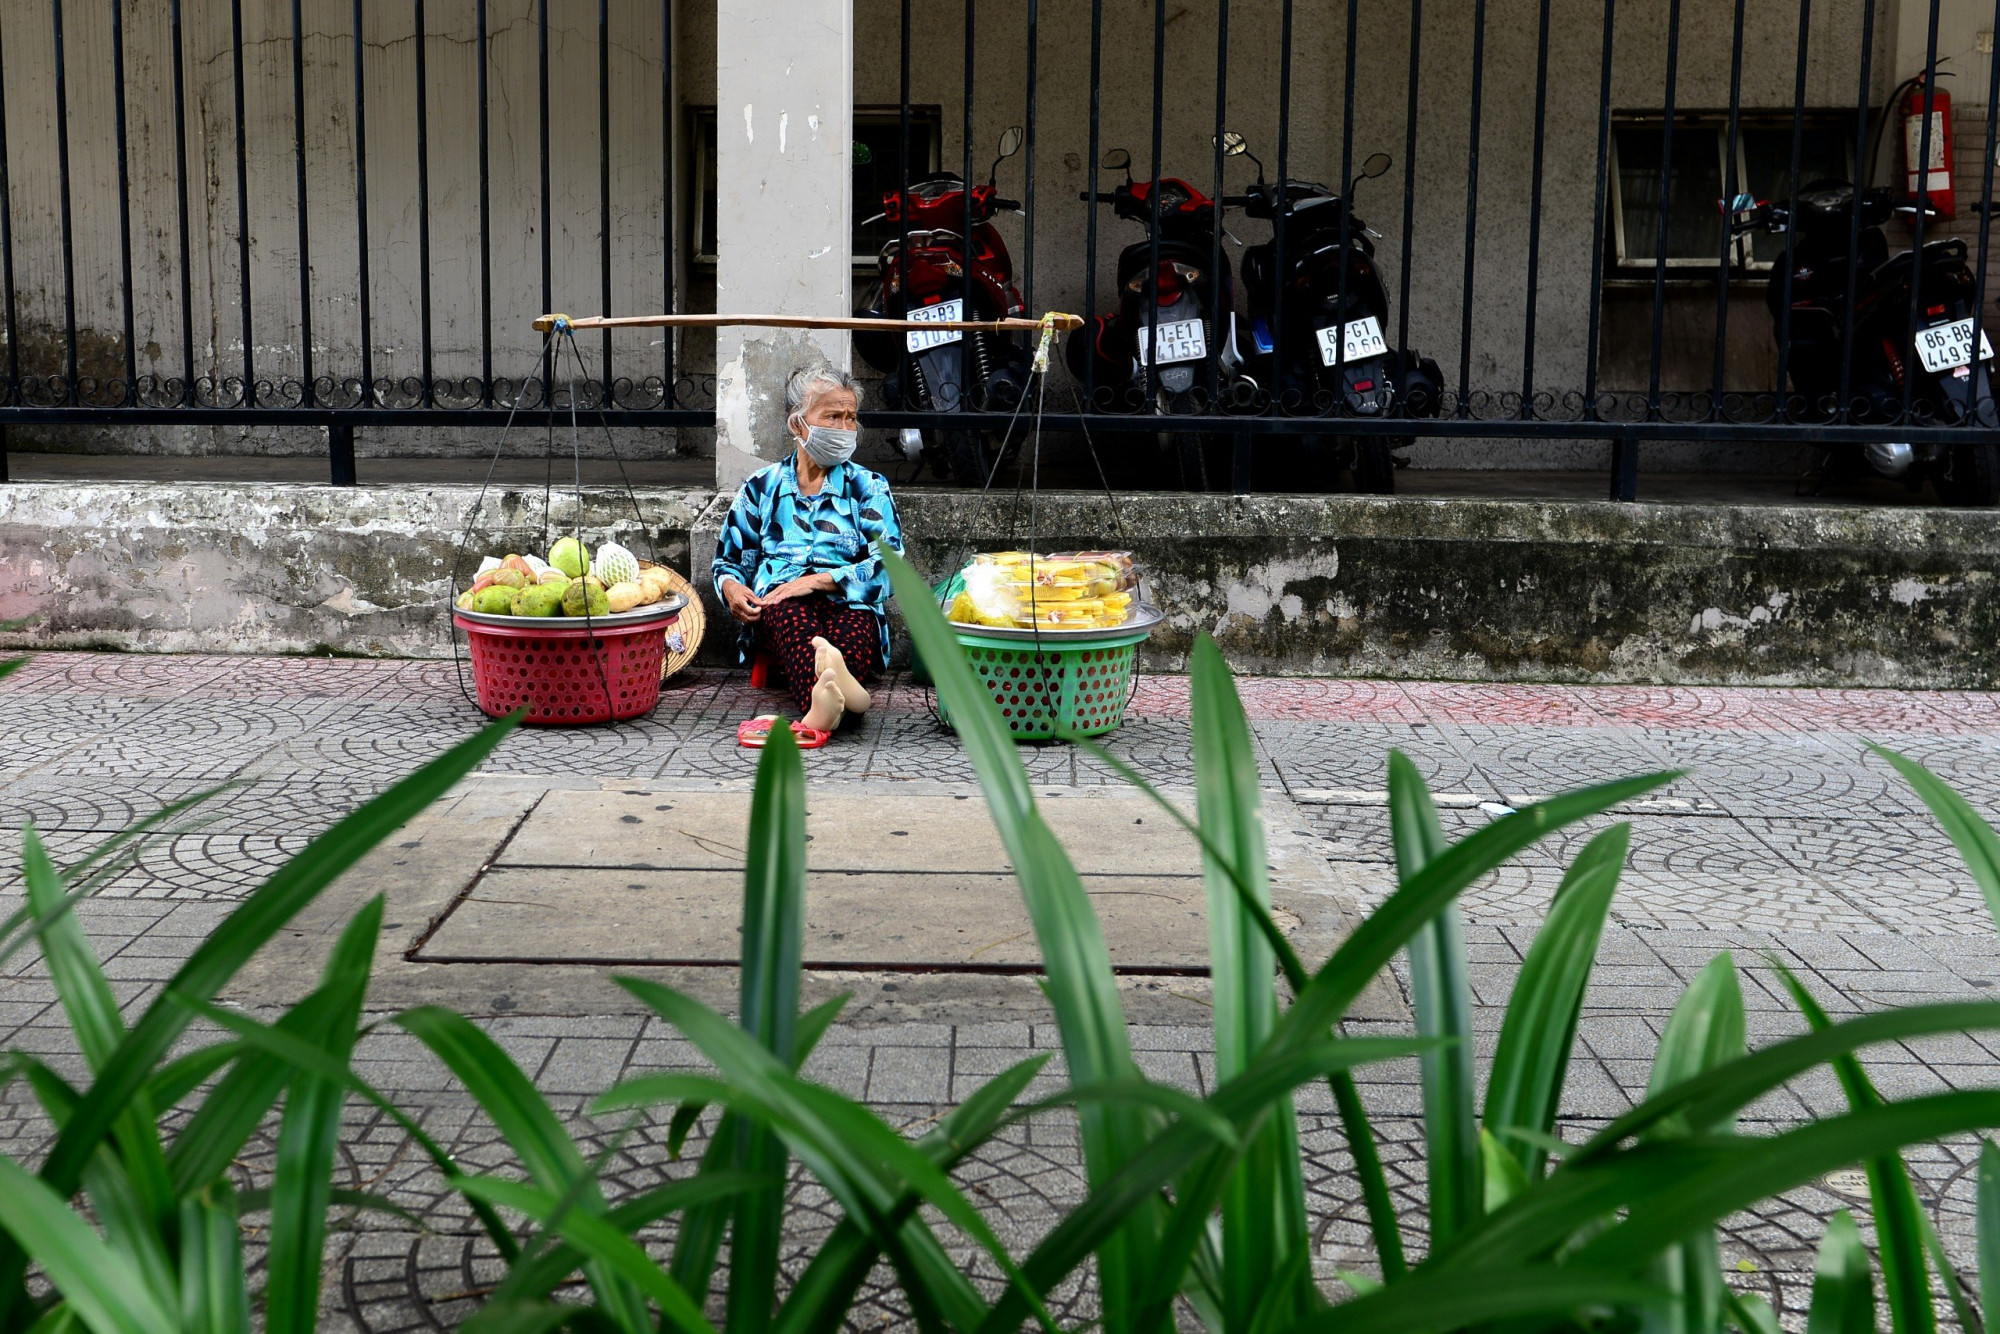 Sài Gòn của mình lúc nào cũng thương thương với những gánh hàng rong - Ảnh: Nguyễn Quang